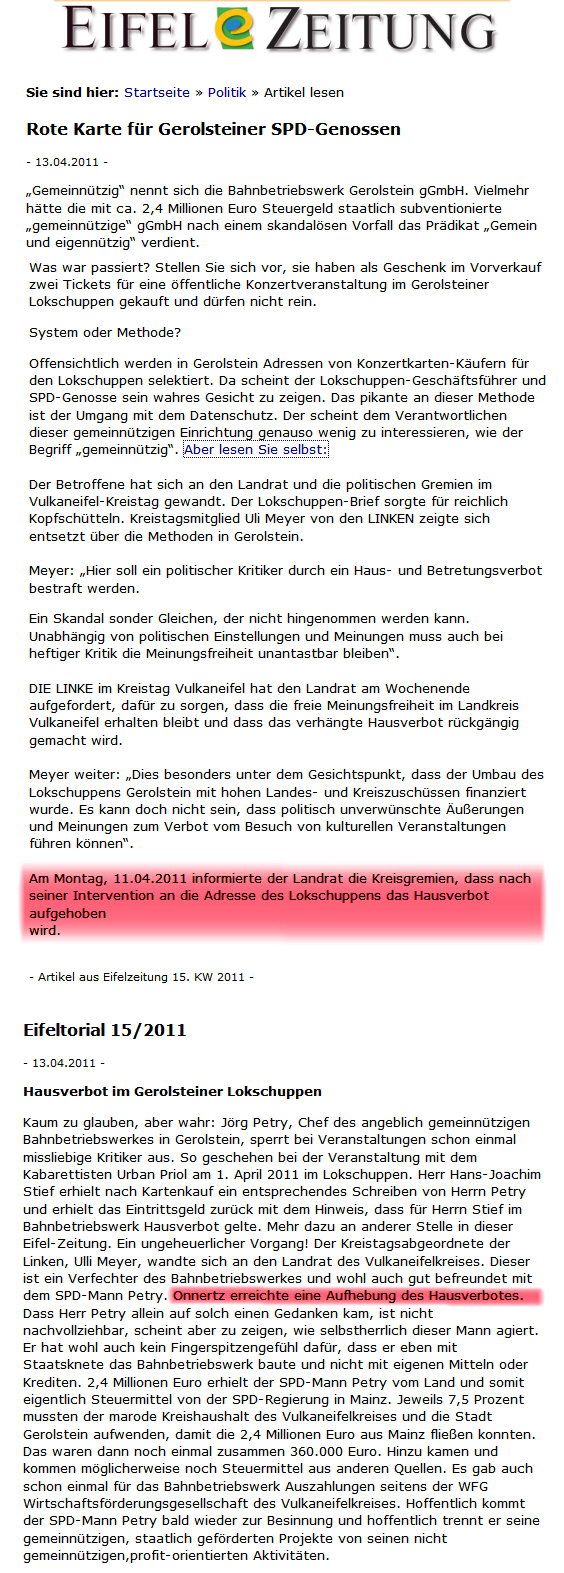 Rote Karte Hausverbot EAZ 15KW 2010